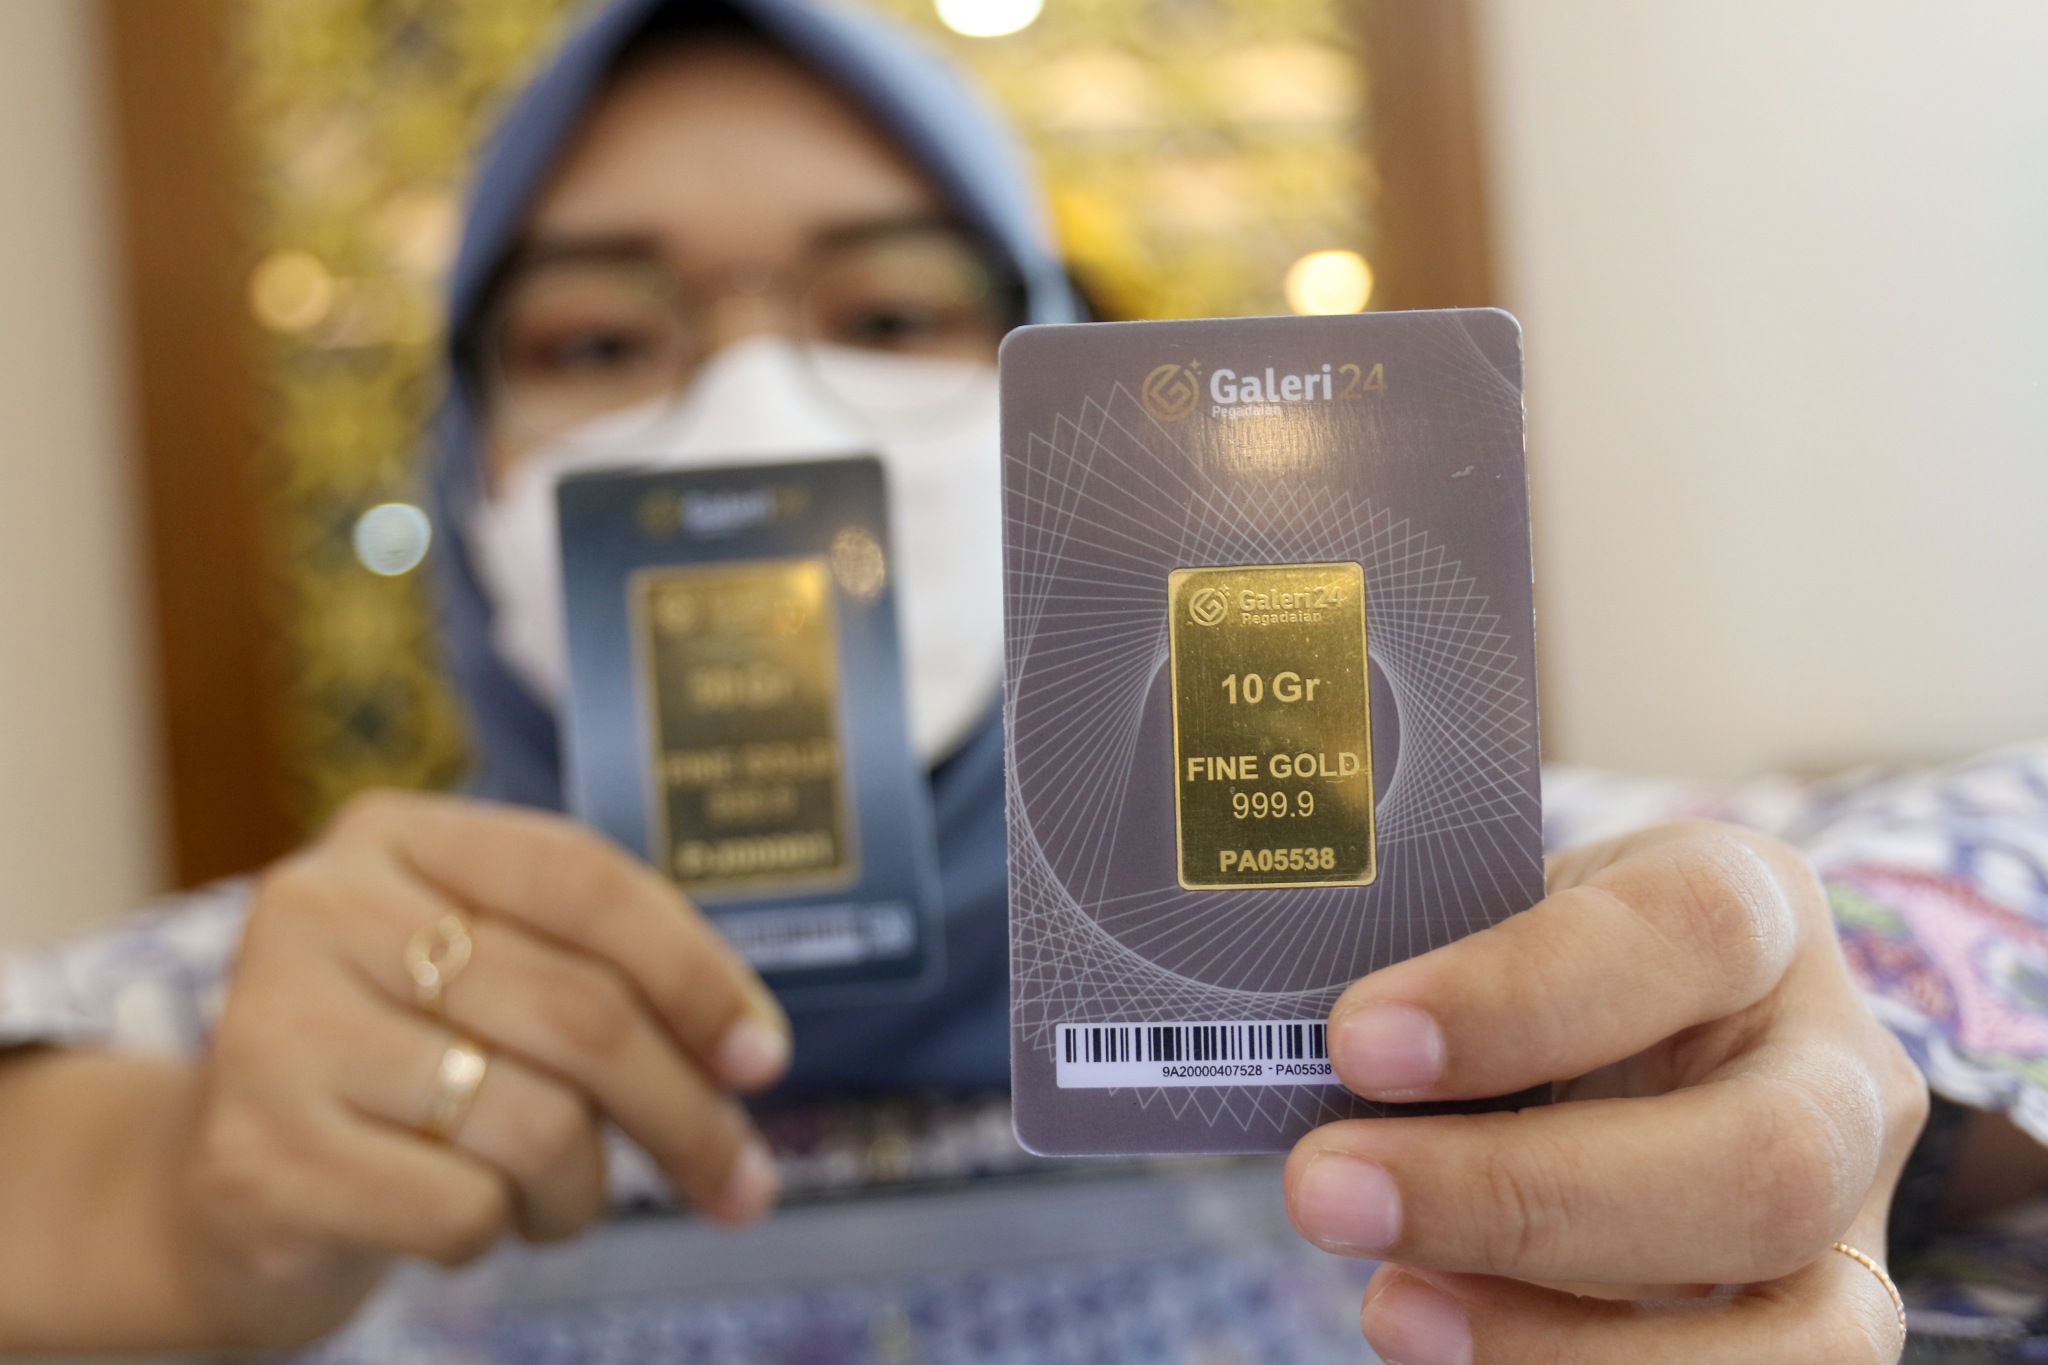 Karyawan menunjukkan emas batangan di Galeri 24 Pegadaian, Jakarta, Rabu, 23 Maret 2022. Foto: Ismail Pohan/TrenAsia